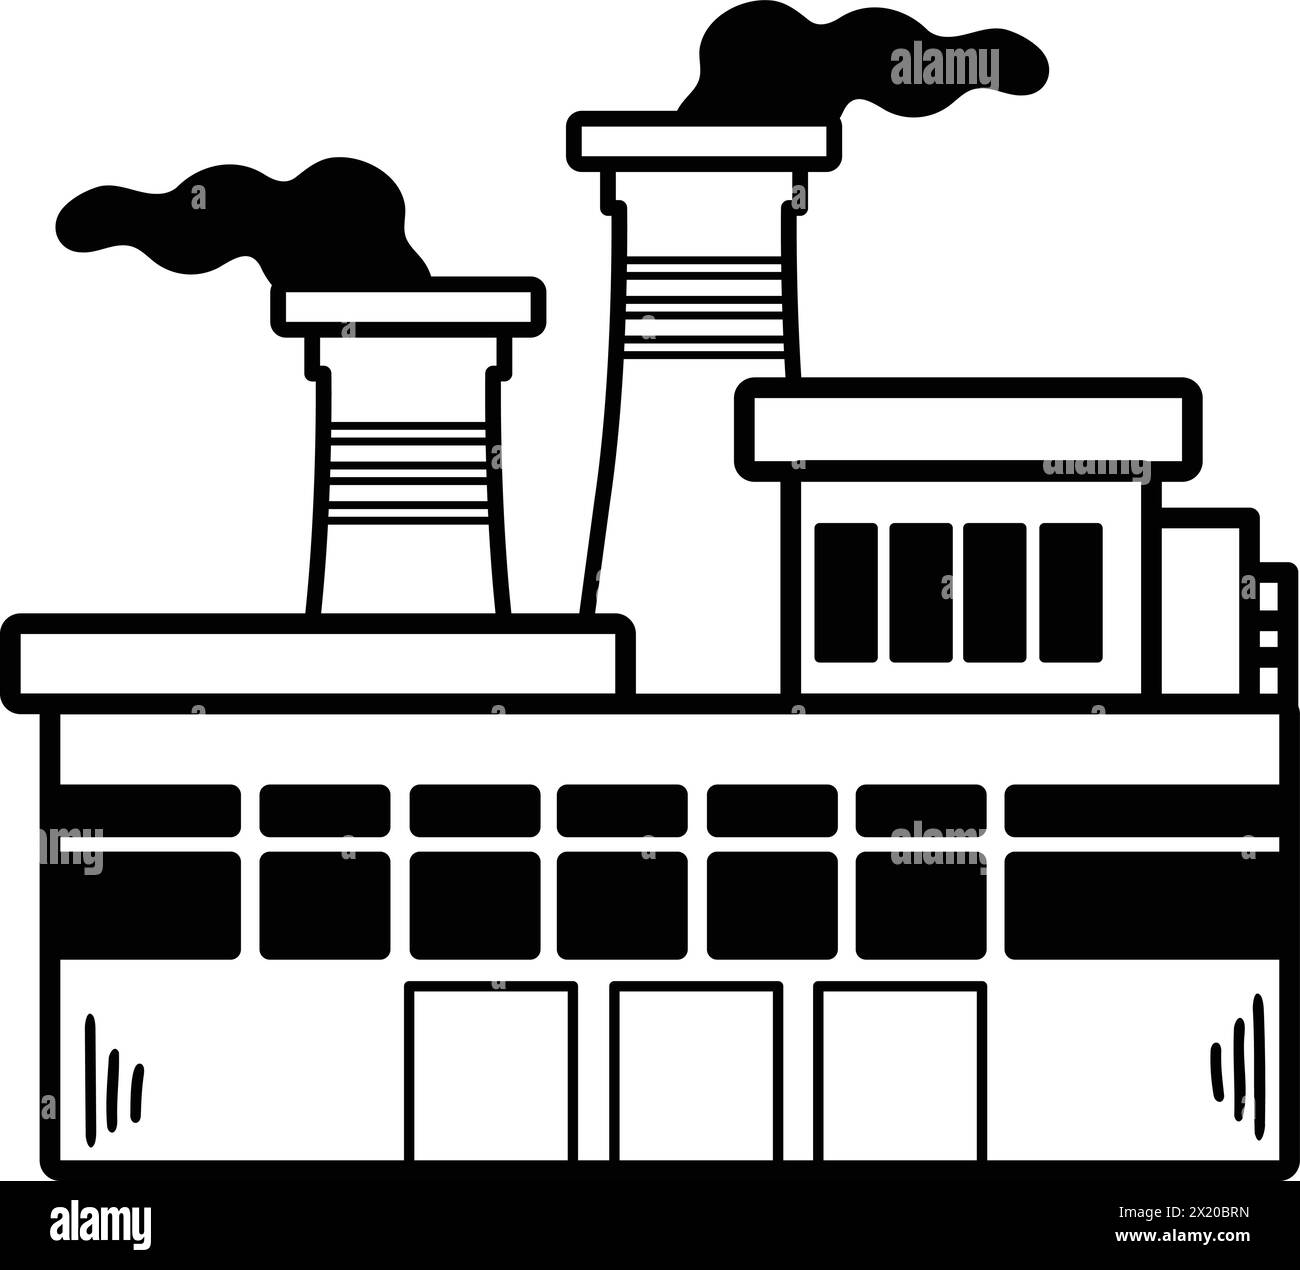 Une grande usine avec de la fumée sortant du haut. Le bâtiment est noir et blanc Illustration de Vecteur